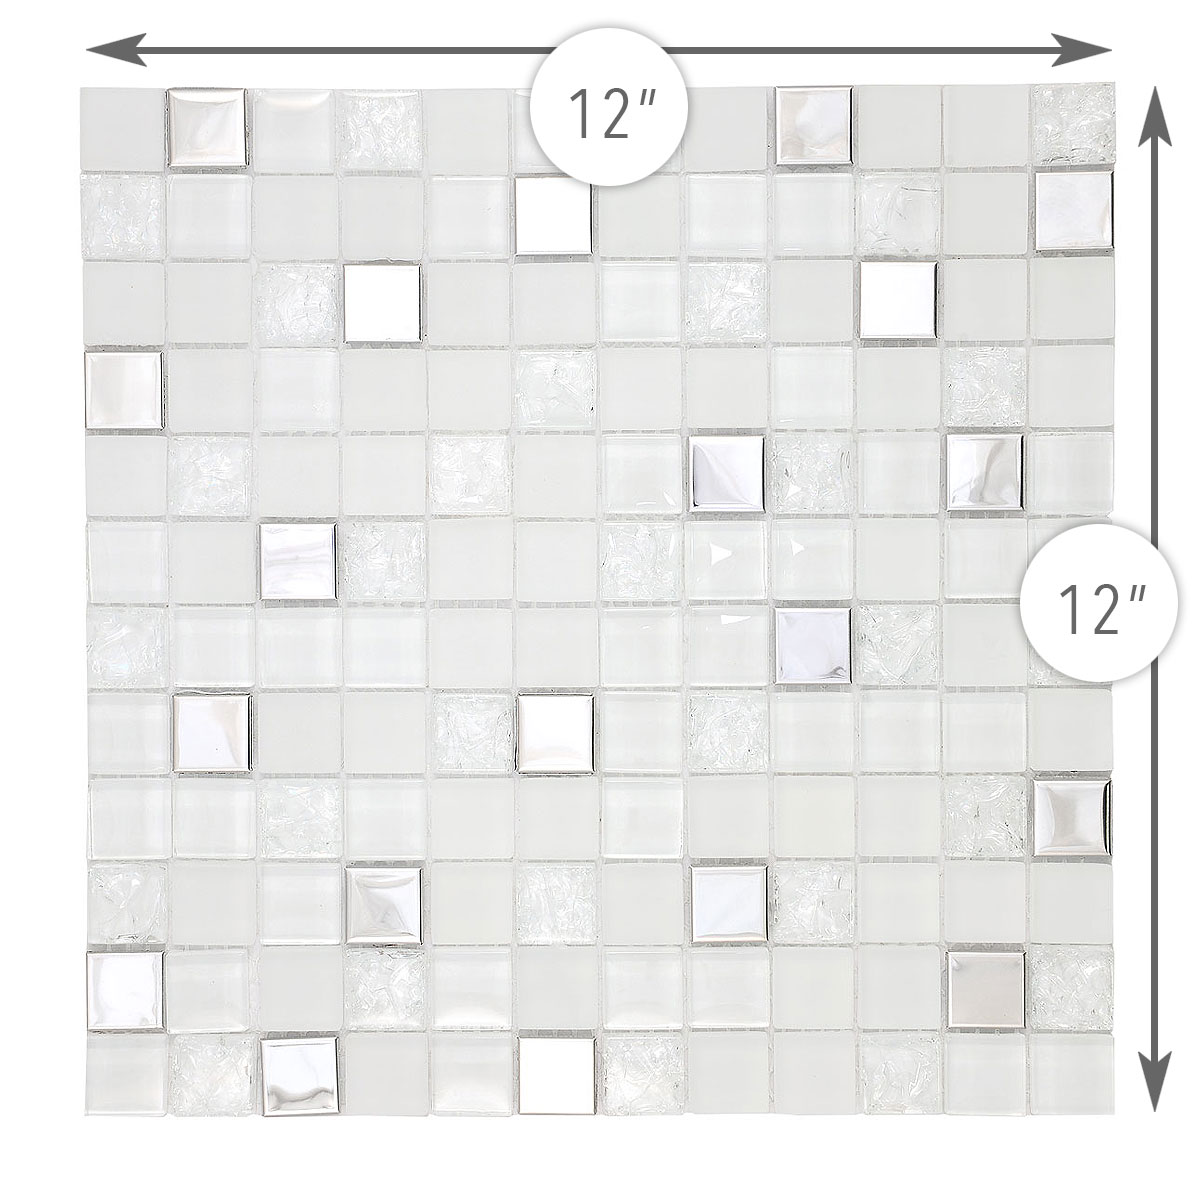 BA1183 modern glass and metal tile size